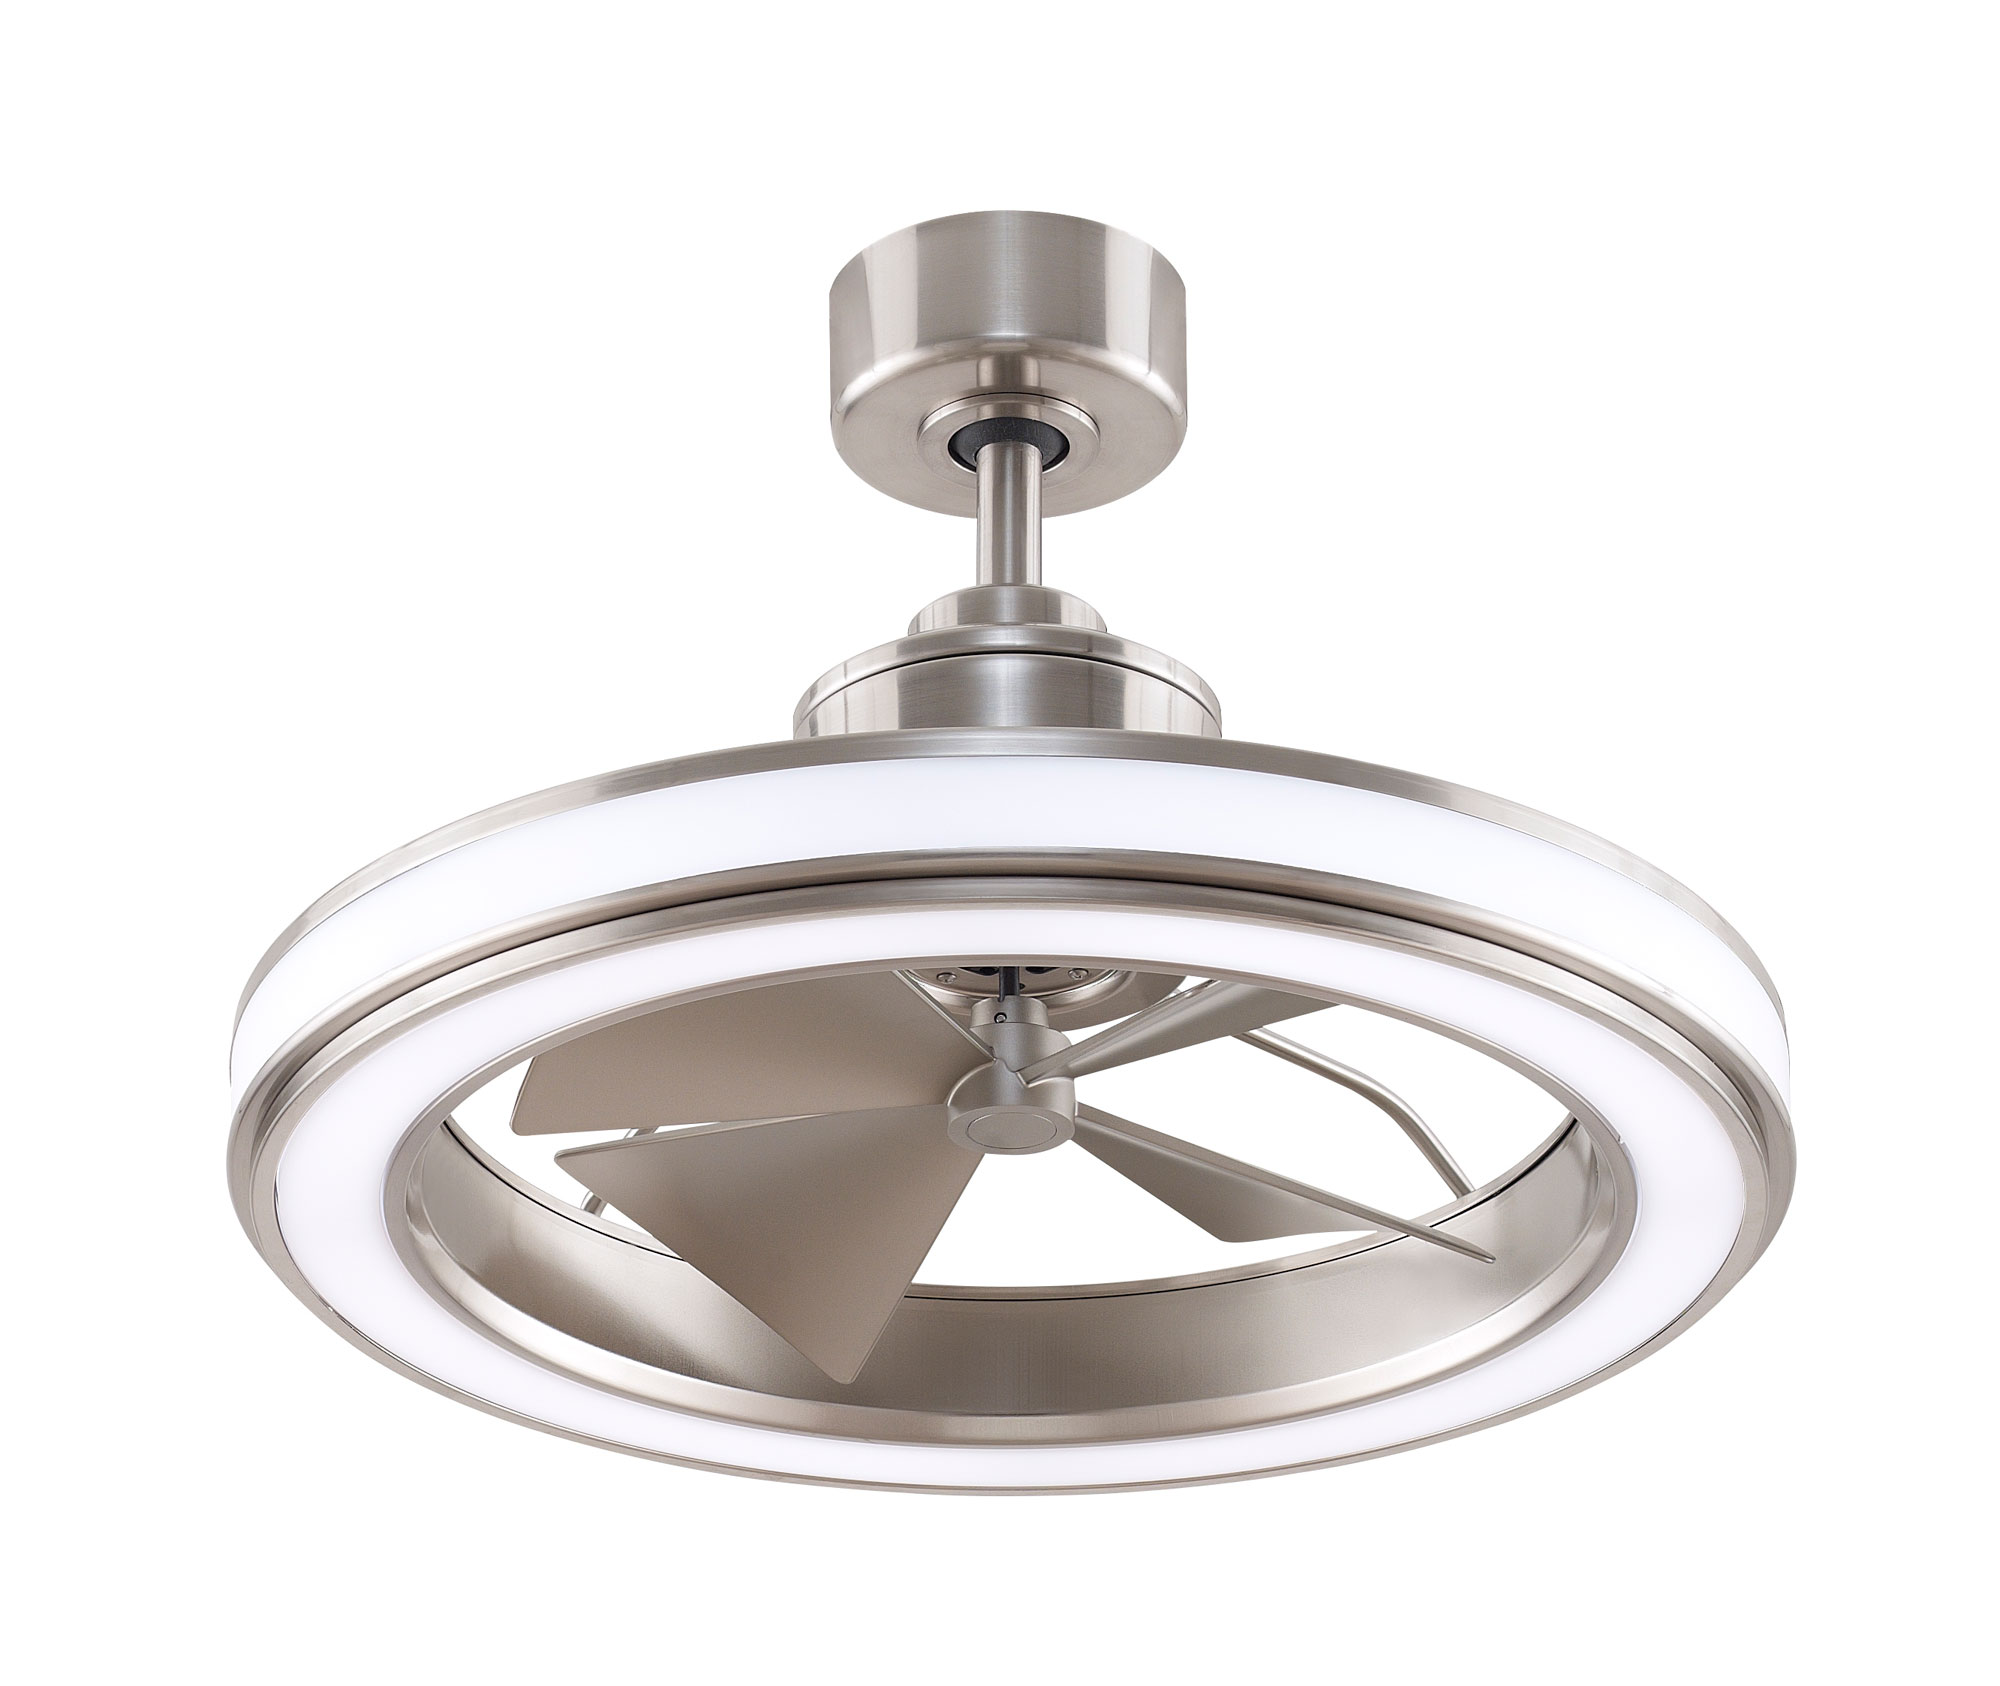 Gleam Indoor / Outdoor Ceiling Fan with Light by Fanimation | FP8404BN |  FAN831838